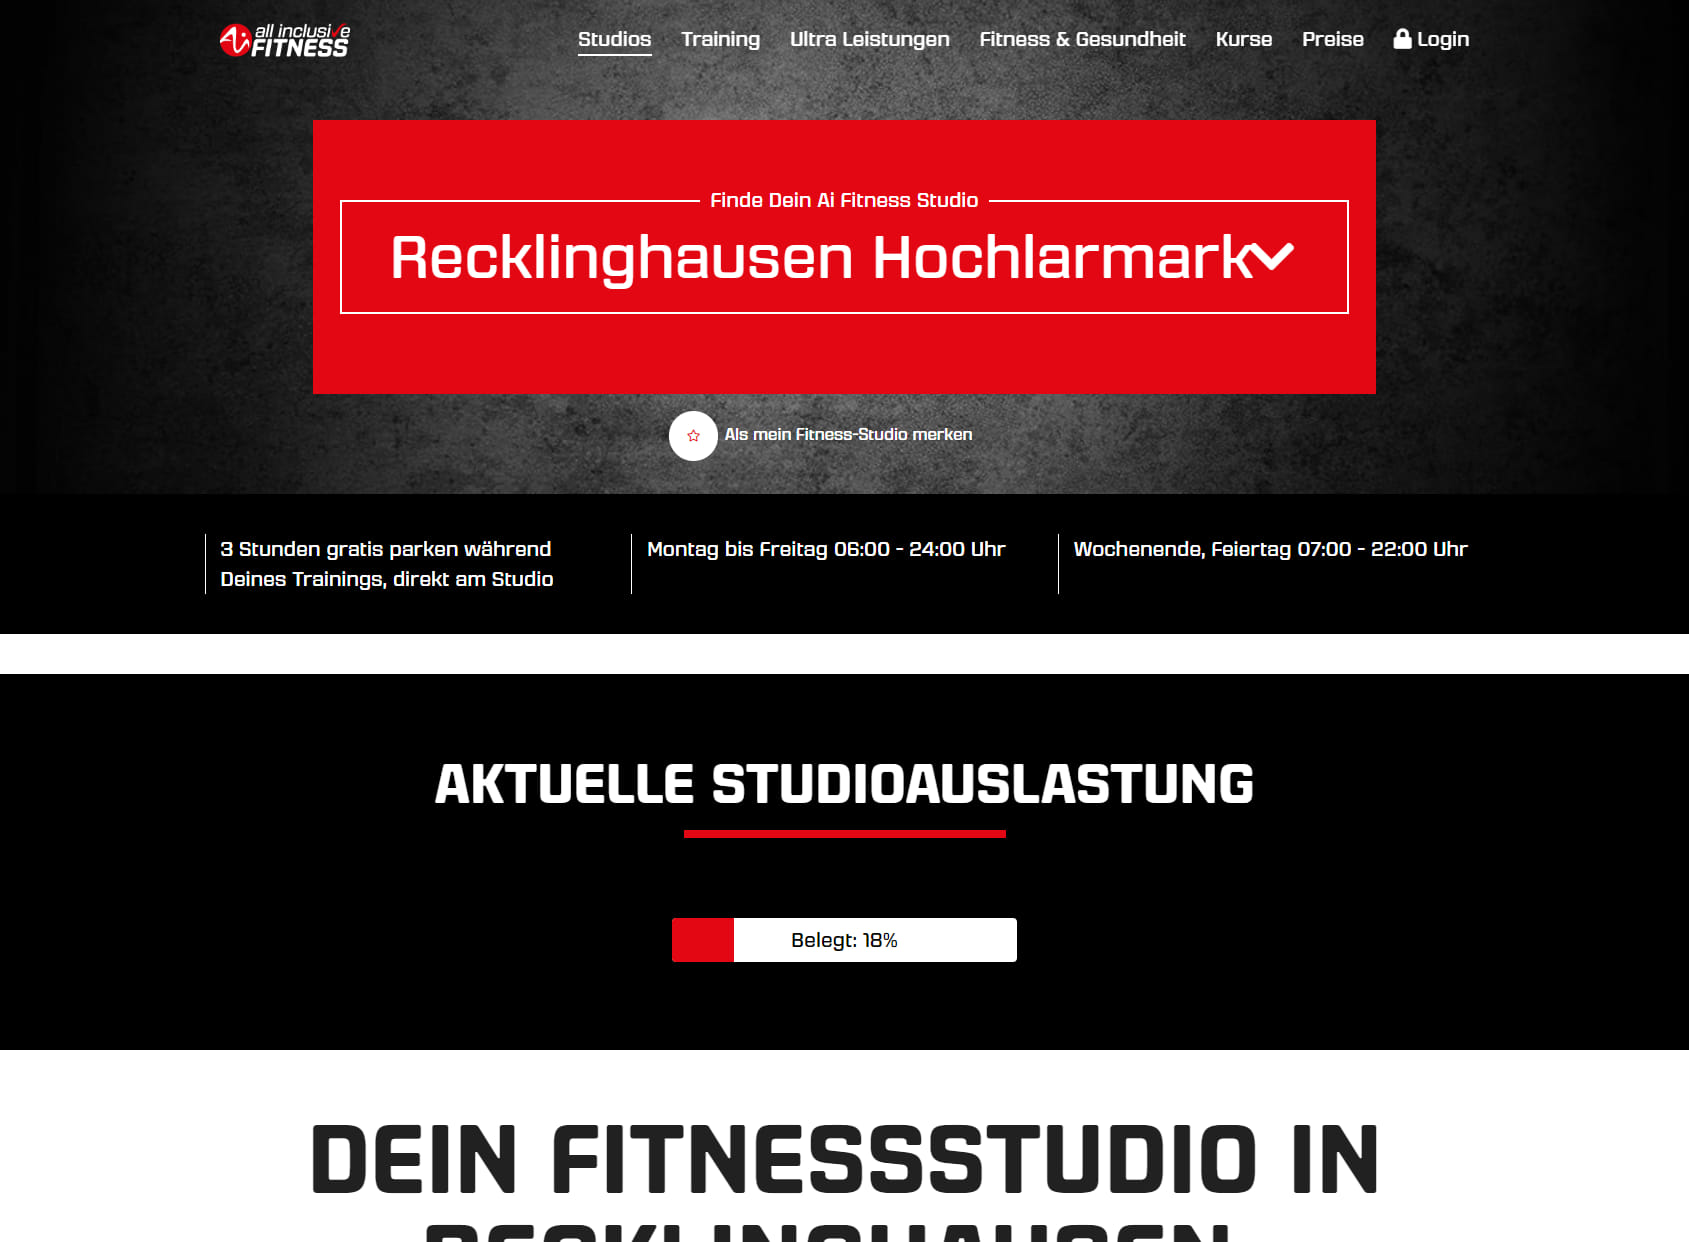 Ai Fitness Recklinghausen Hochlarmark